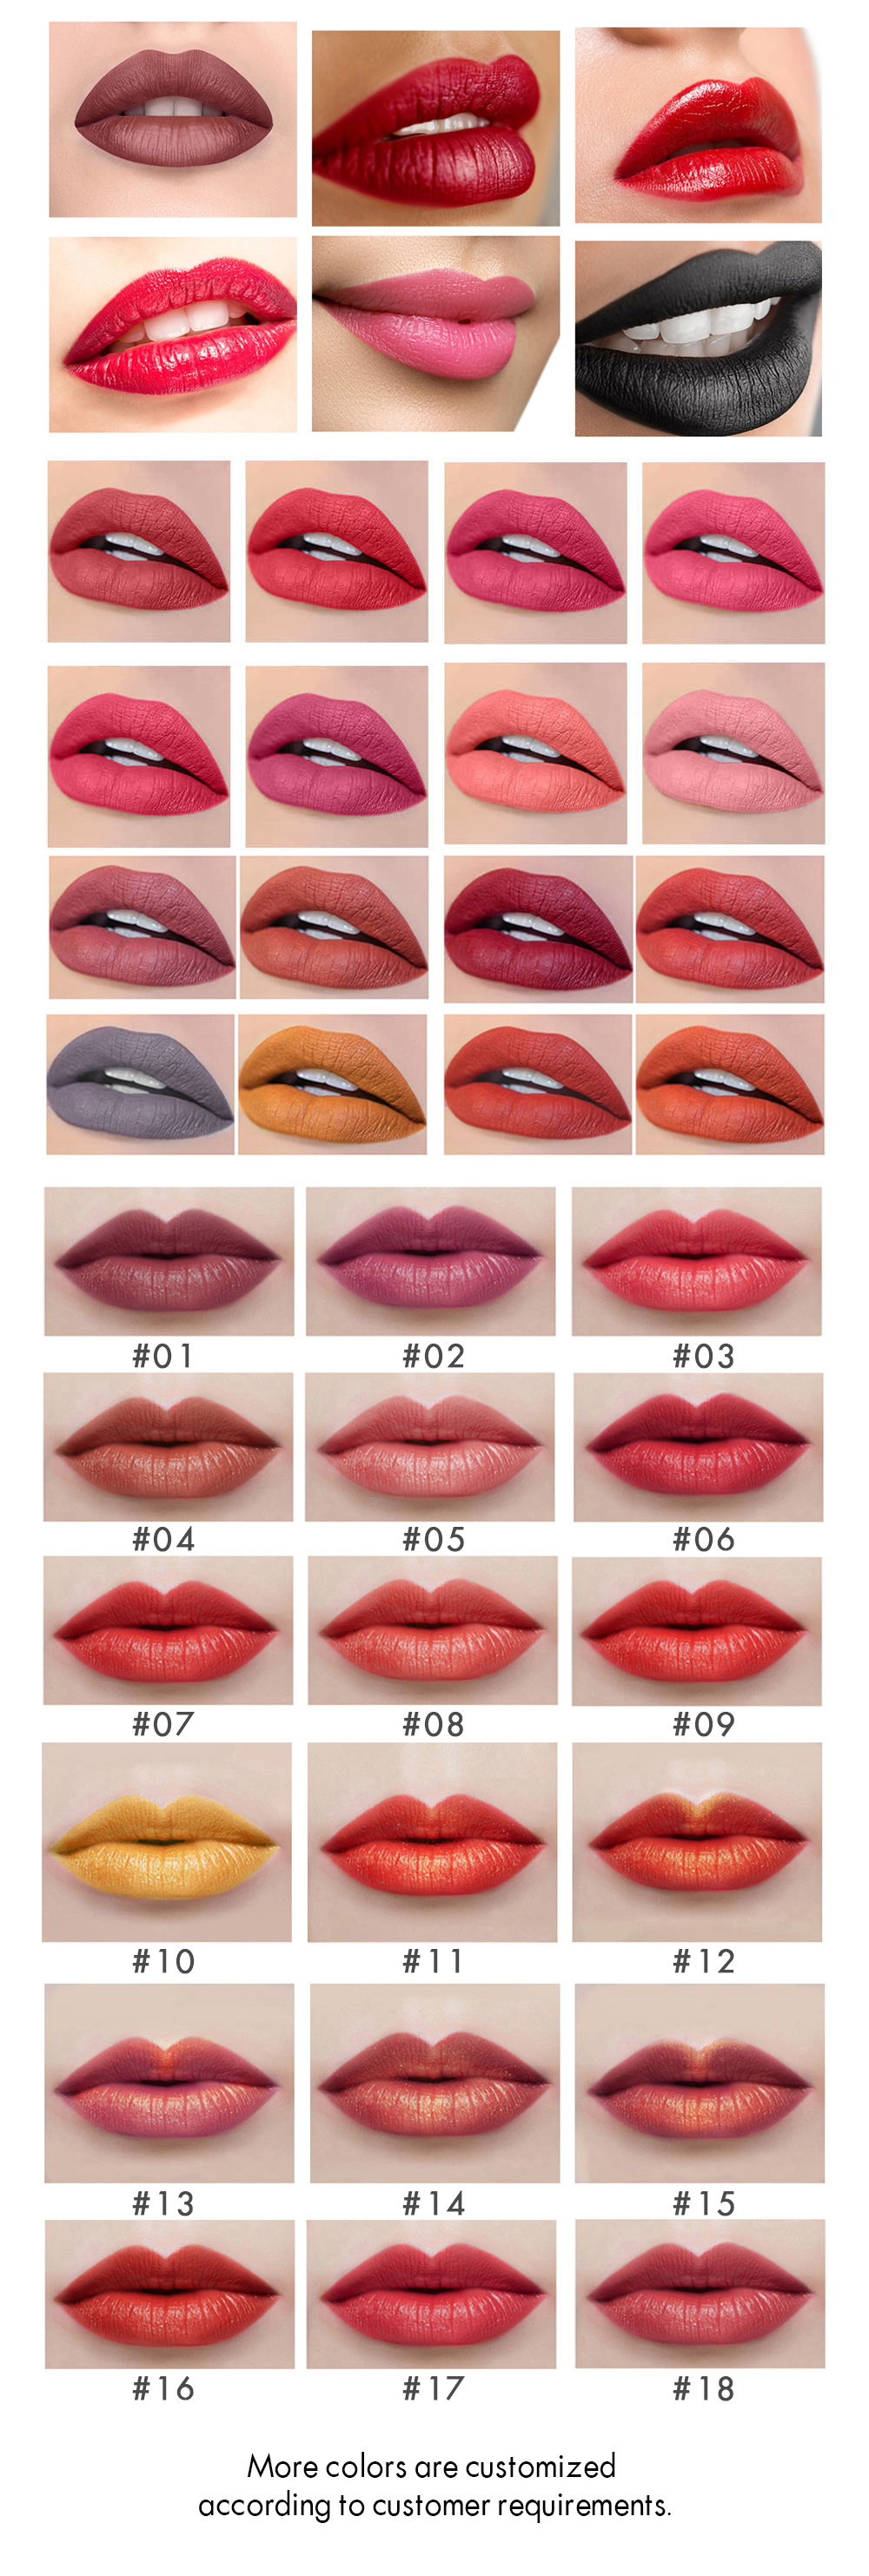 4. Six-color lipstick color2